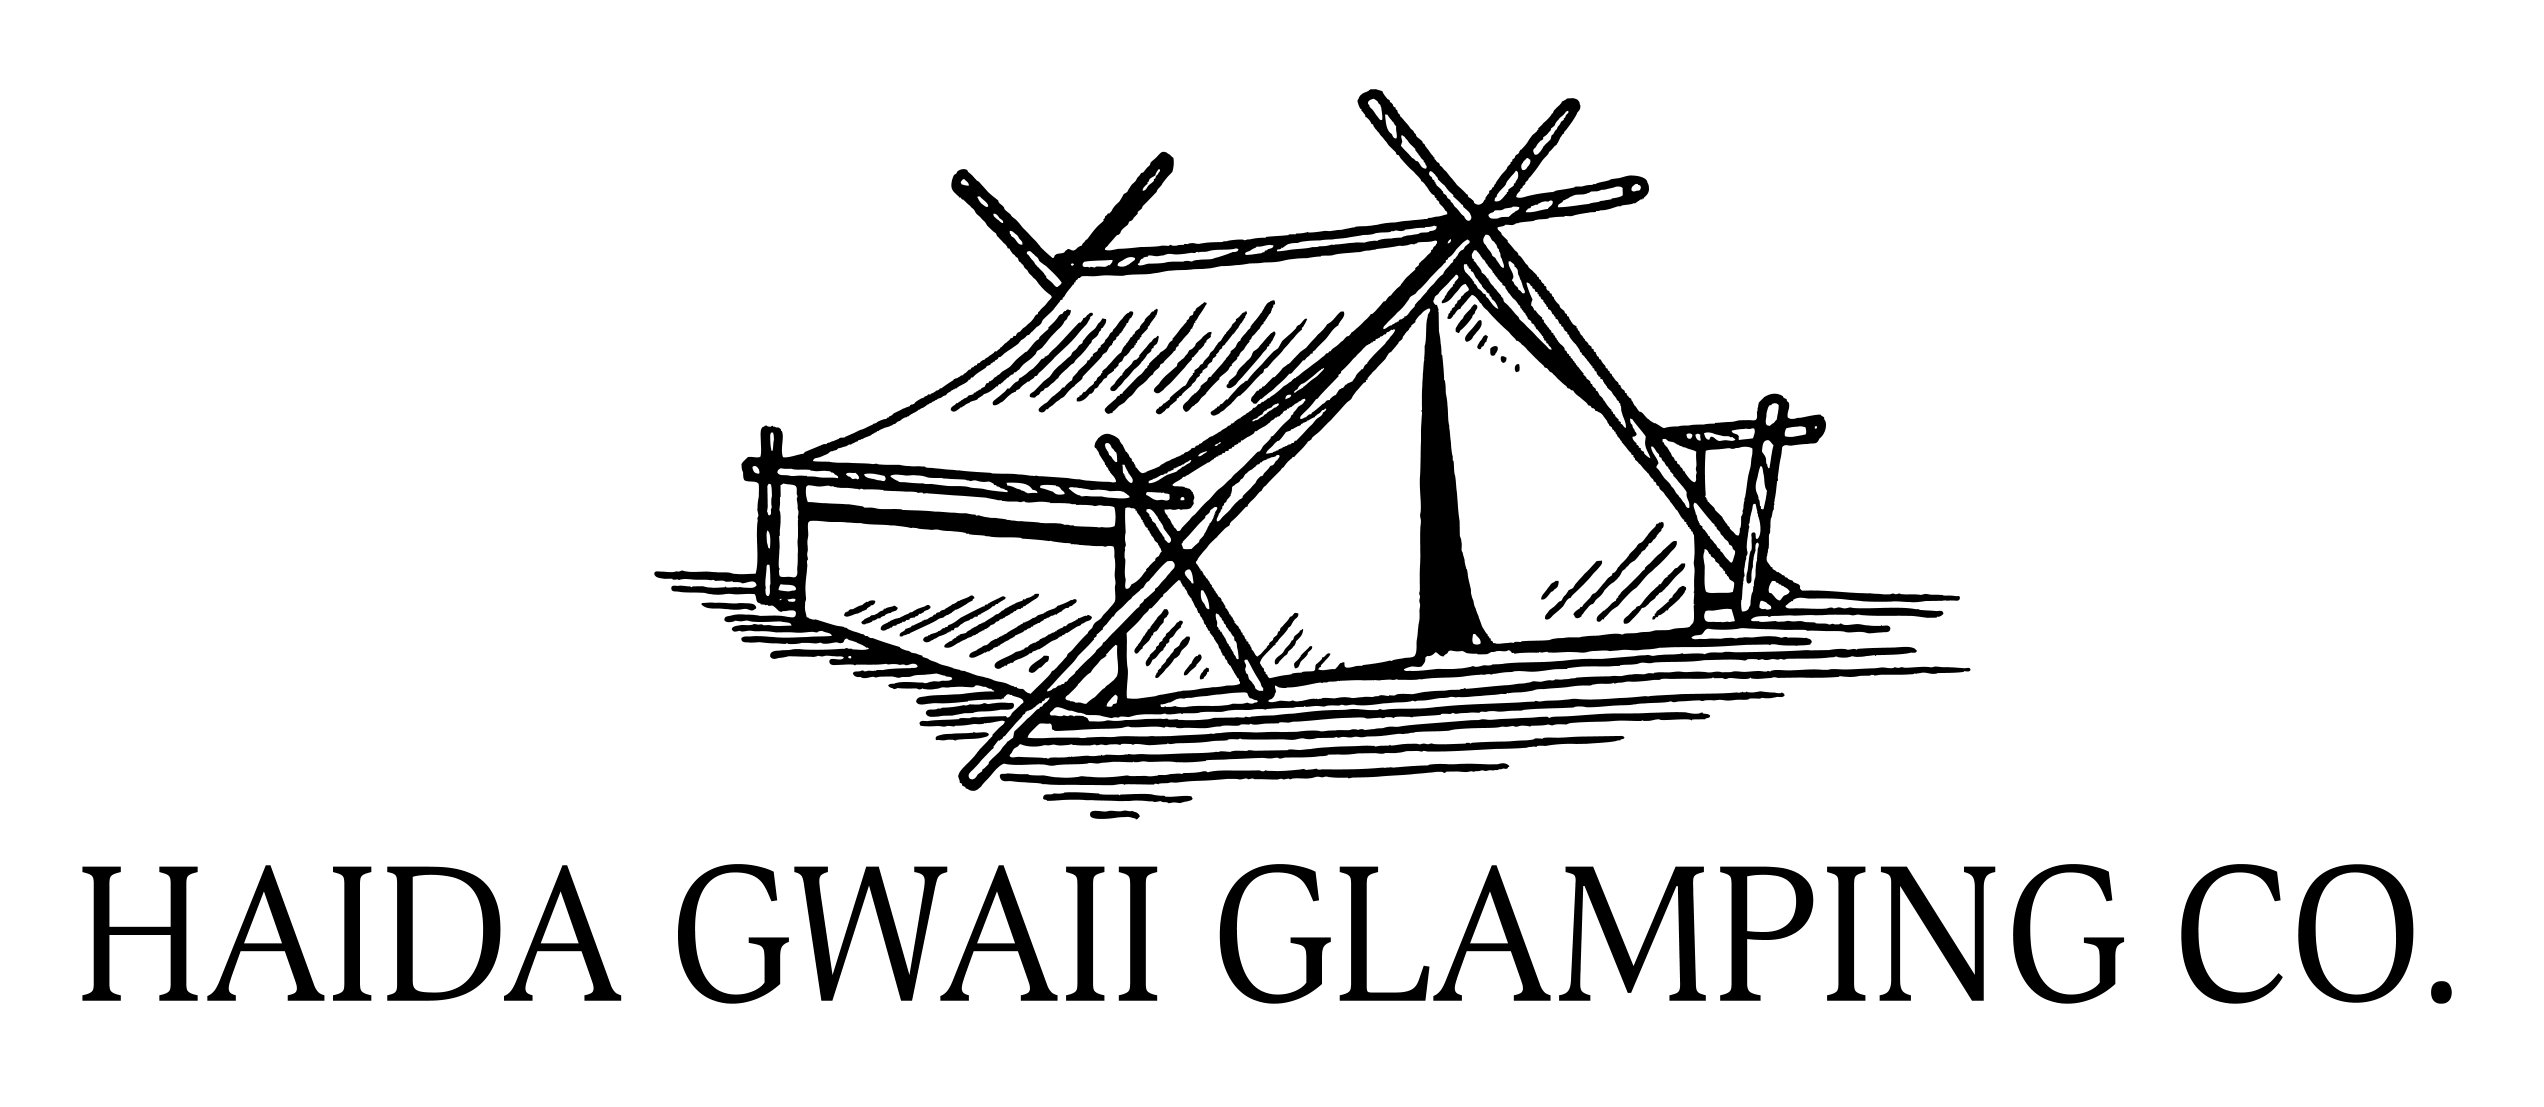 Haida Gwaii Glamping Co.